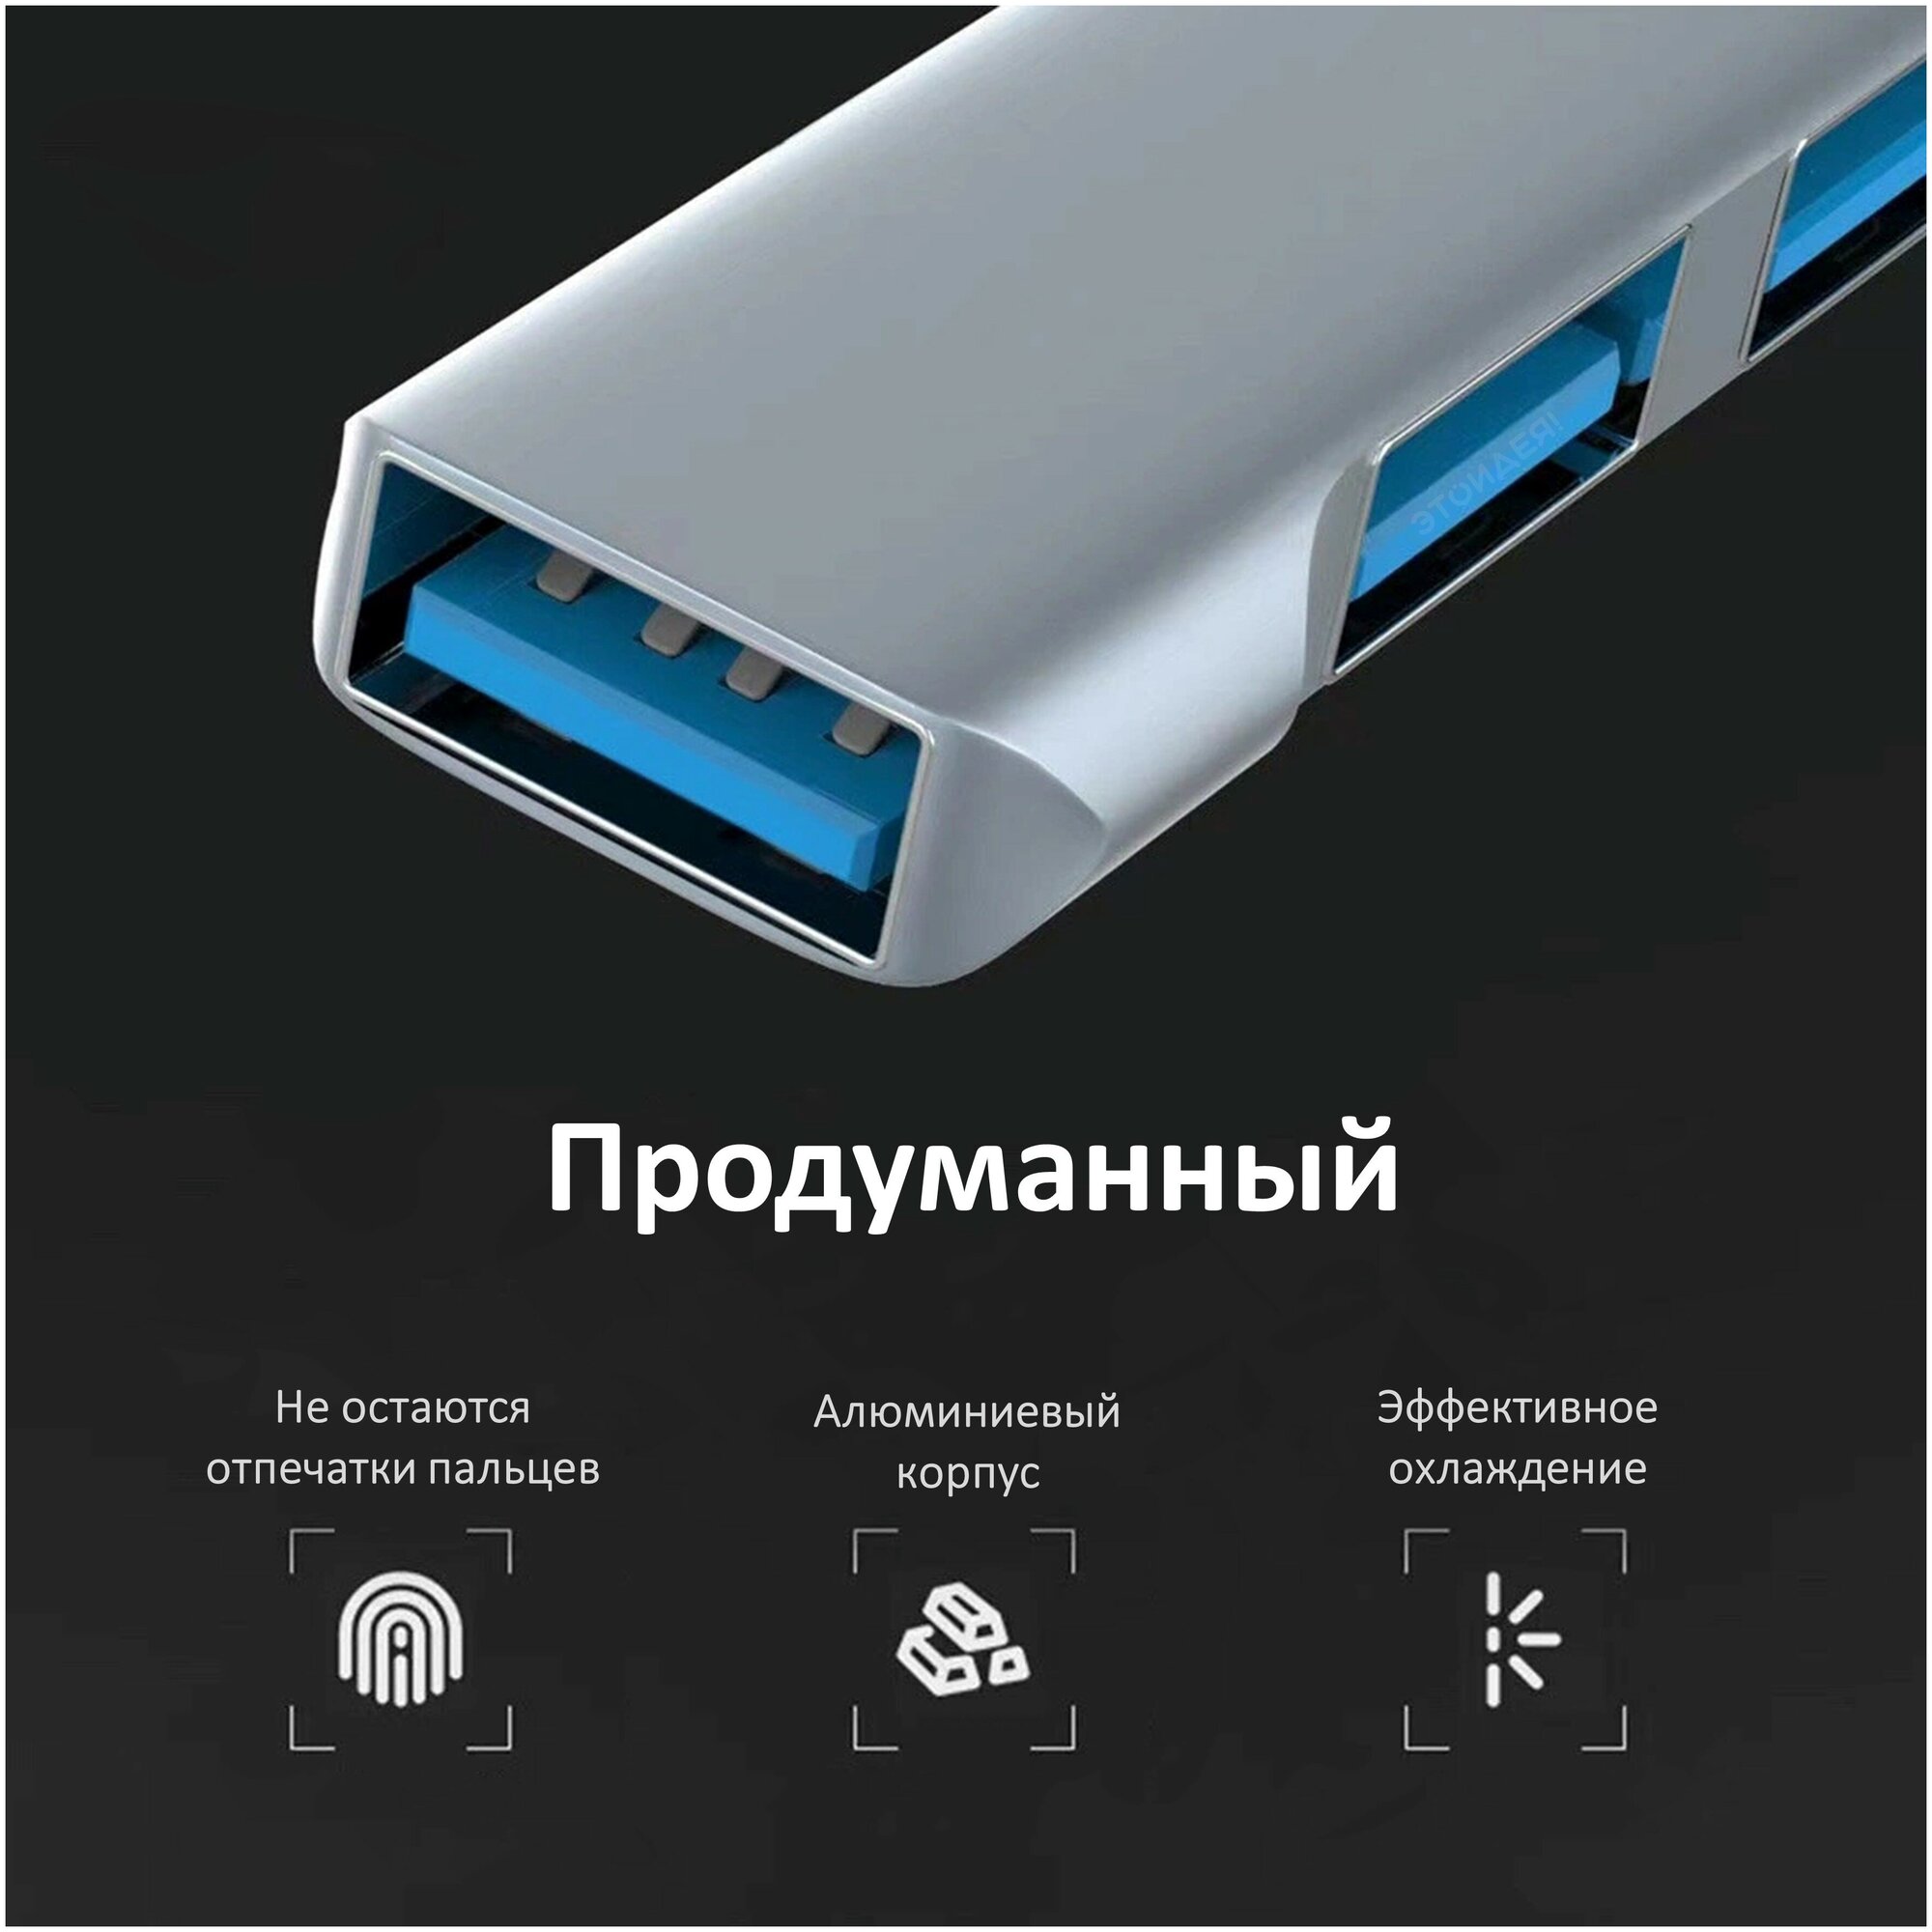 Хаб USB 3.0 на 3 порта, серебристый / компактный USB переходник